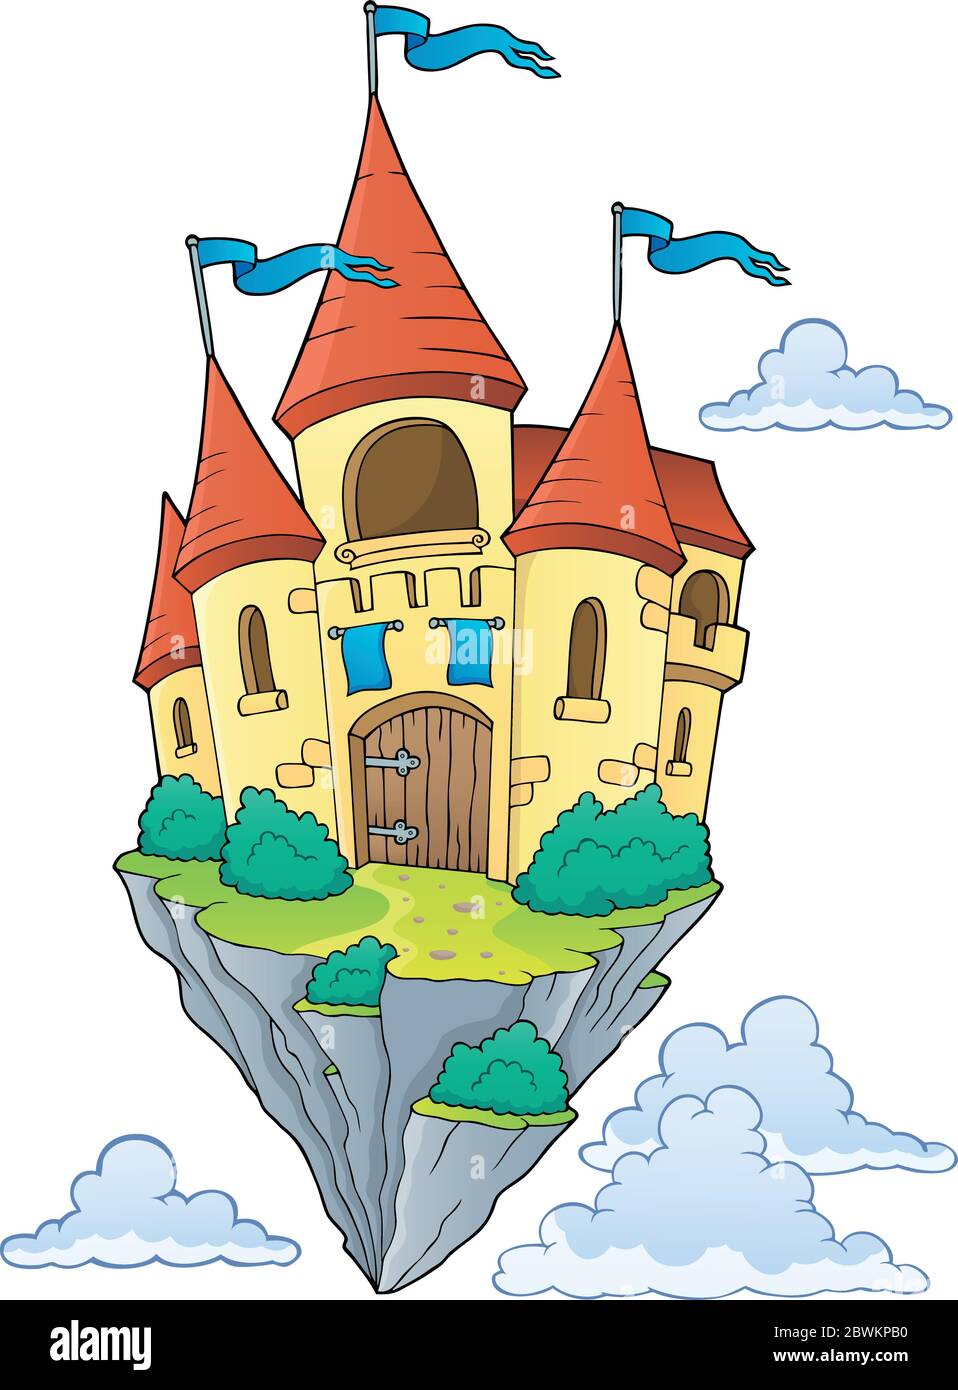 Image de thème de château volant 1 - illustration vectorielle eps10. Illustration de Vecteur